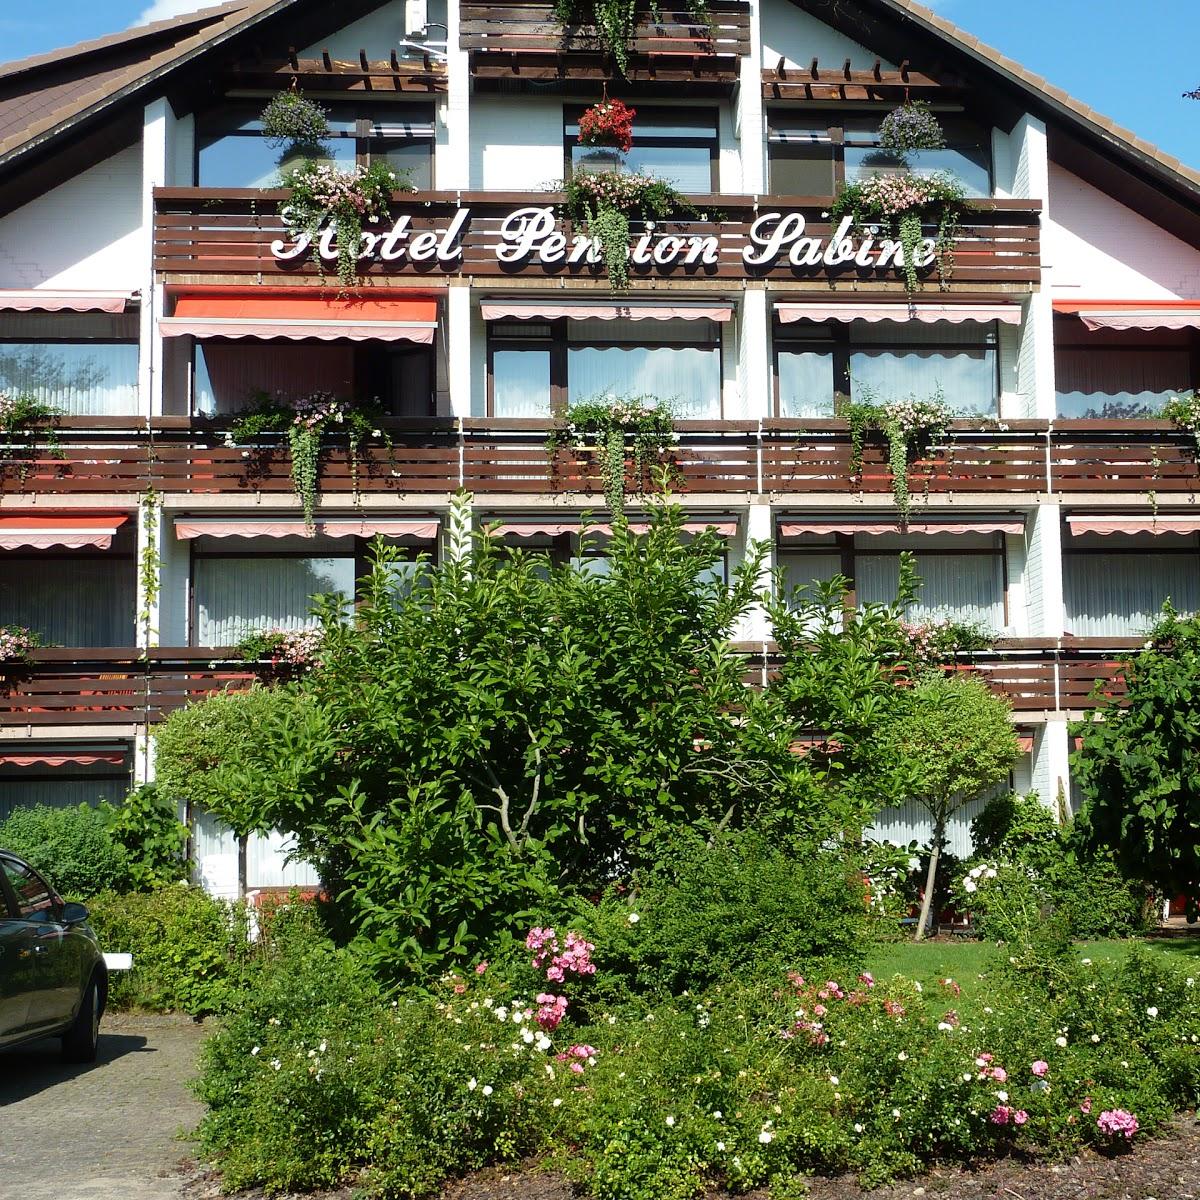 Restaurant "Hotel - Pension Sabine" in Bad Bevensen